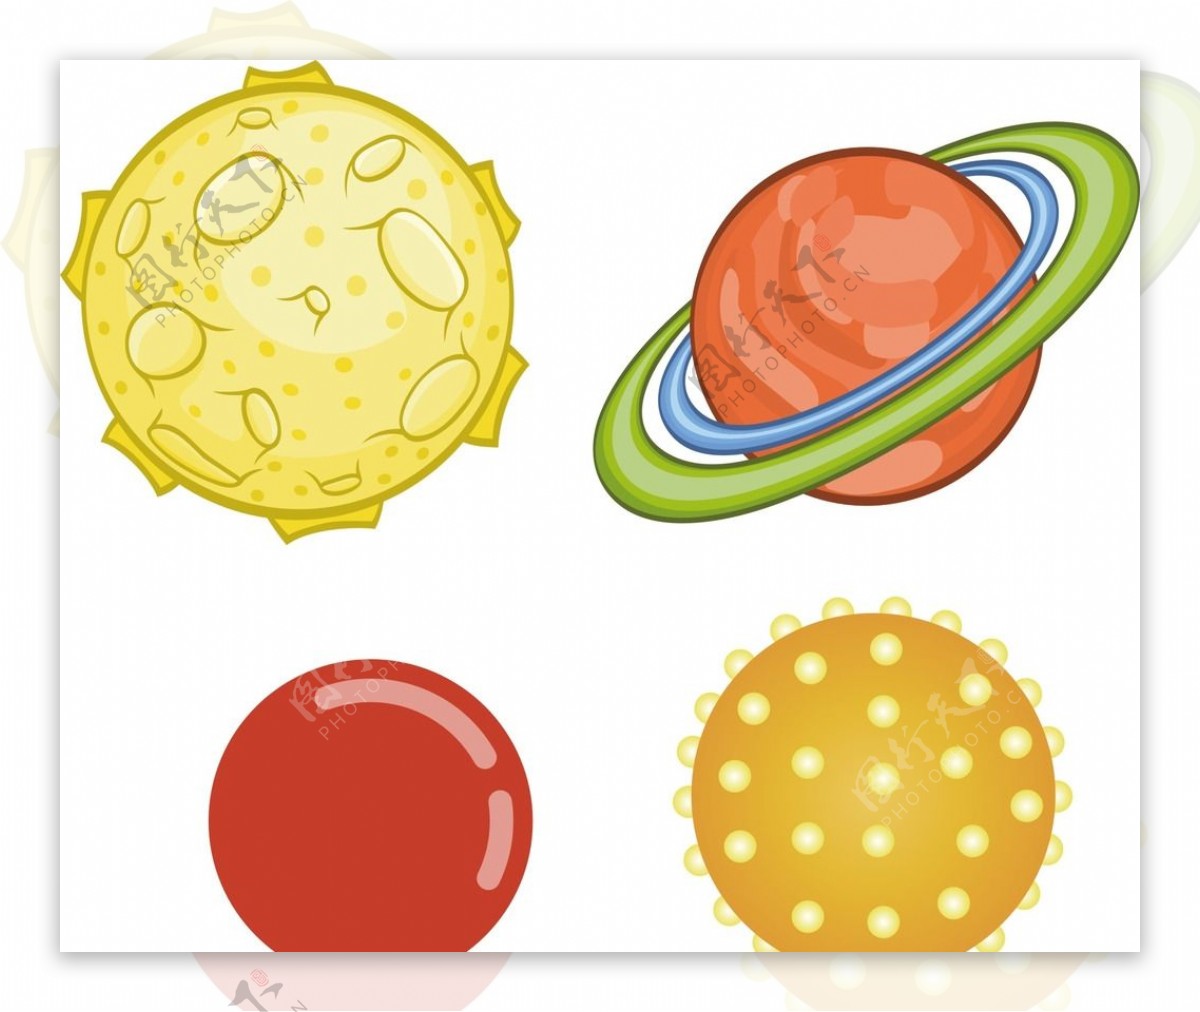 行星圆形玩具图片